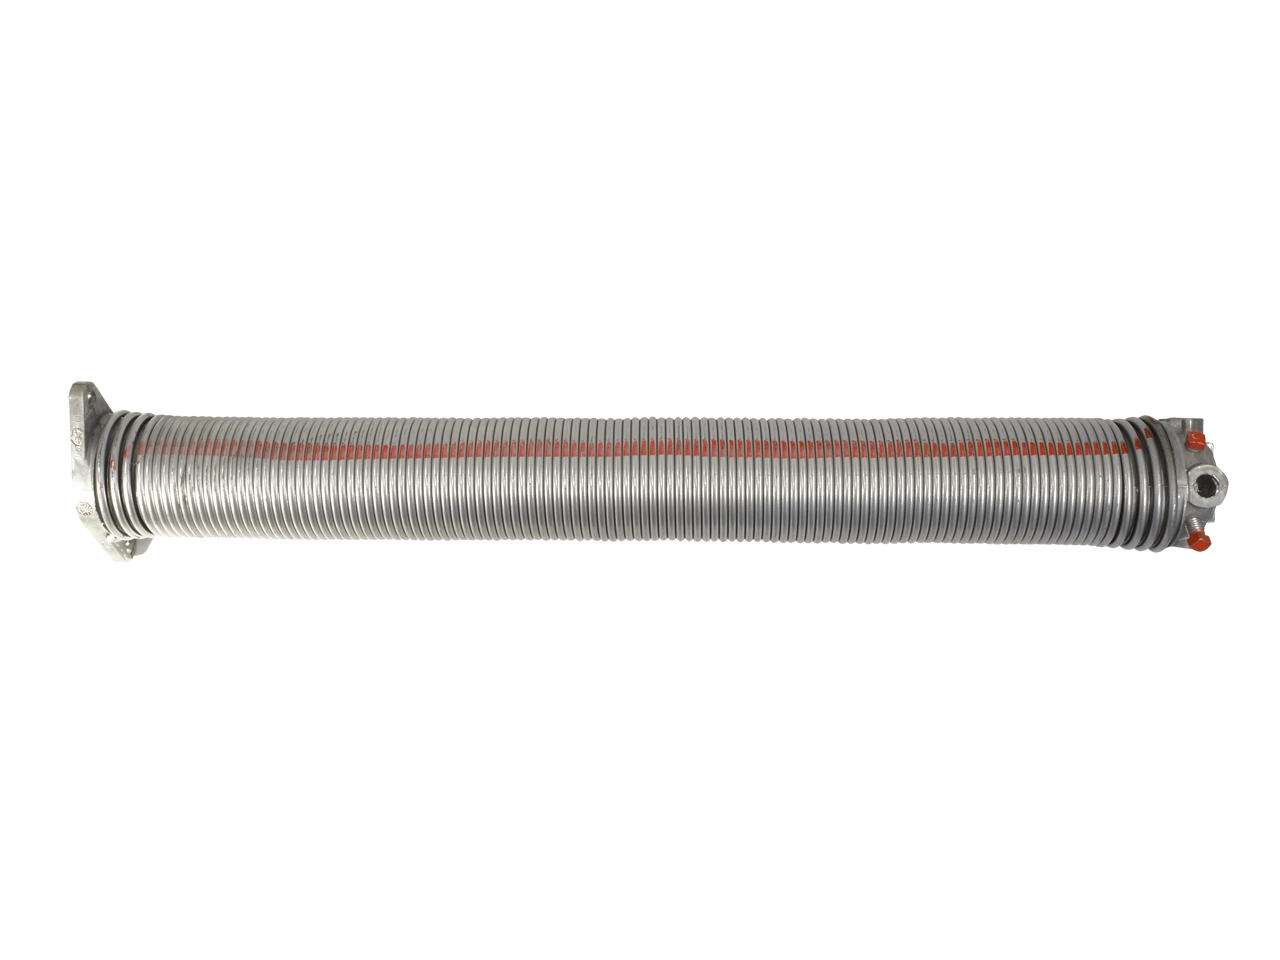 Torfeder, Innendurchmesser 67 mm, Drahtstärke 5,5 mm, Windung Links, mit Köpfen für Welle 25,4mm